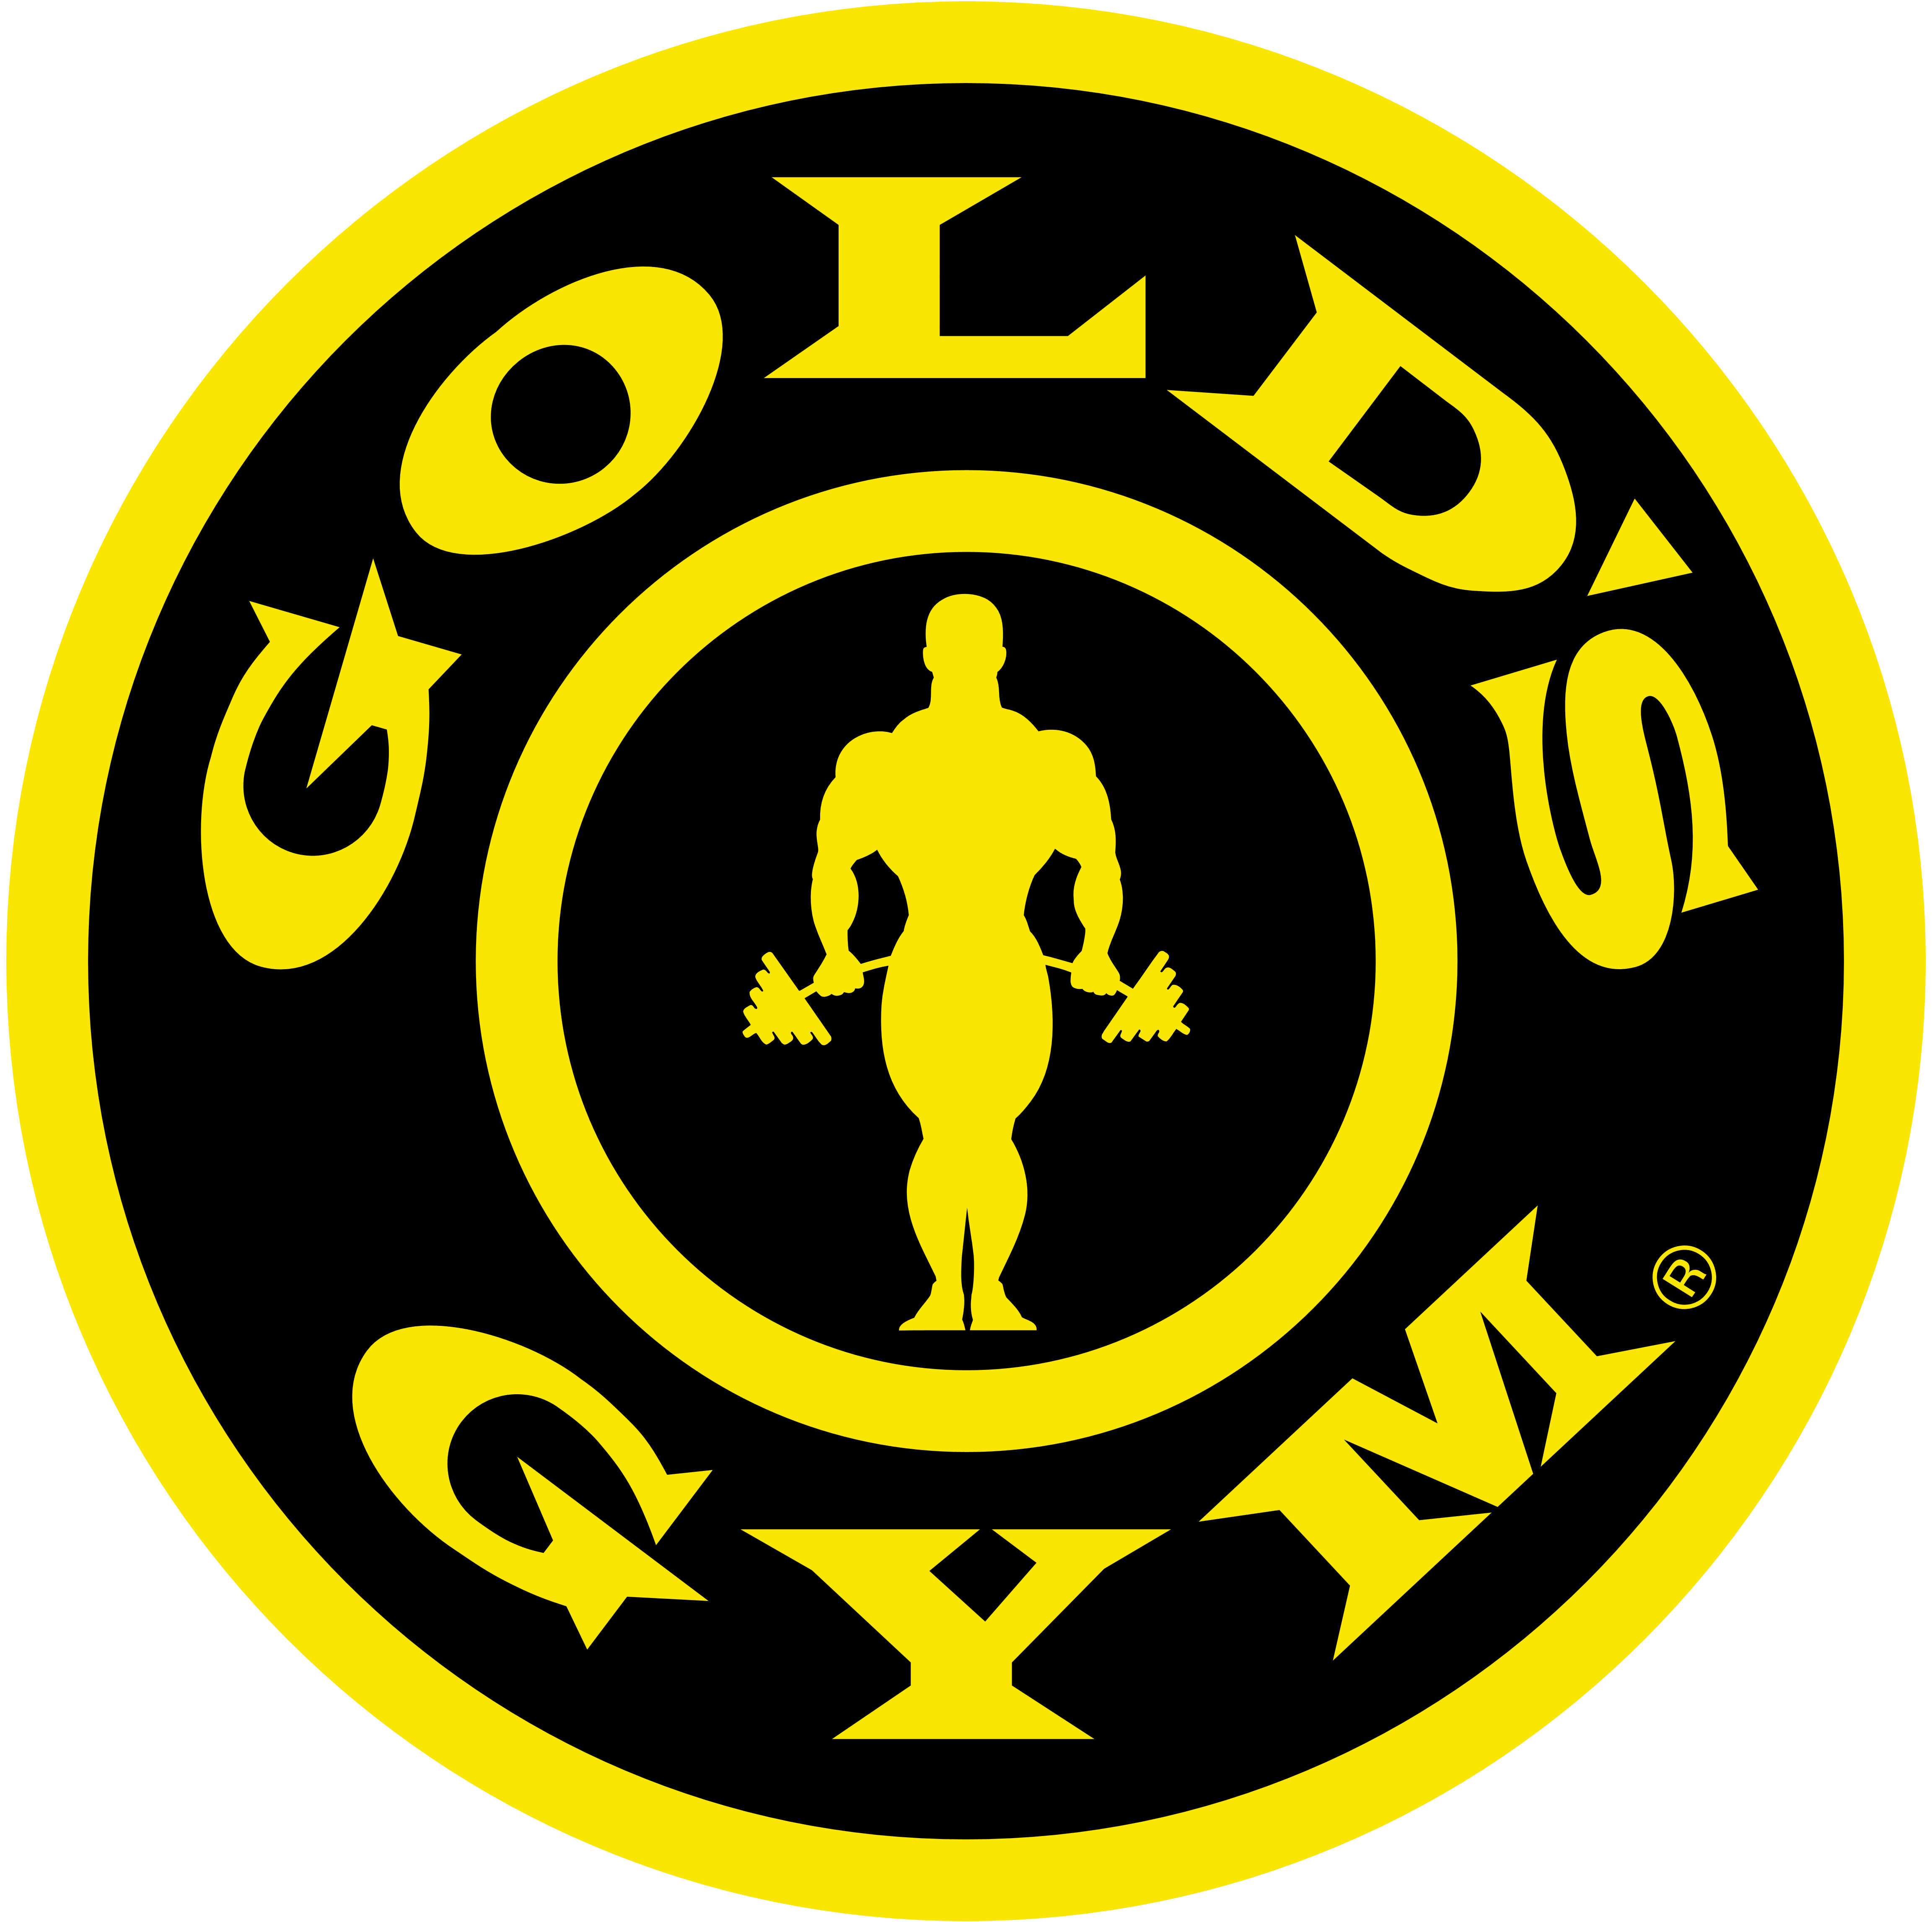 Gold’s Gym – Logos Download